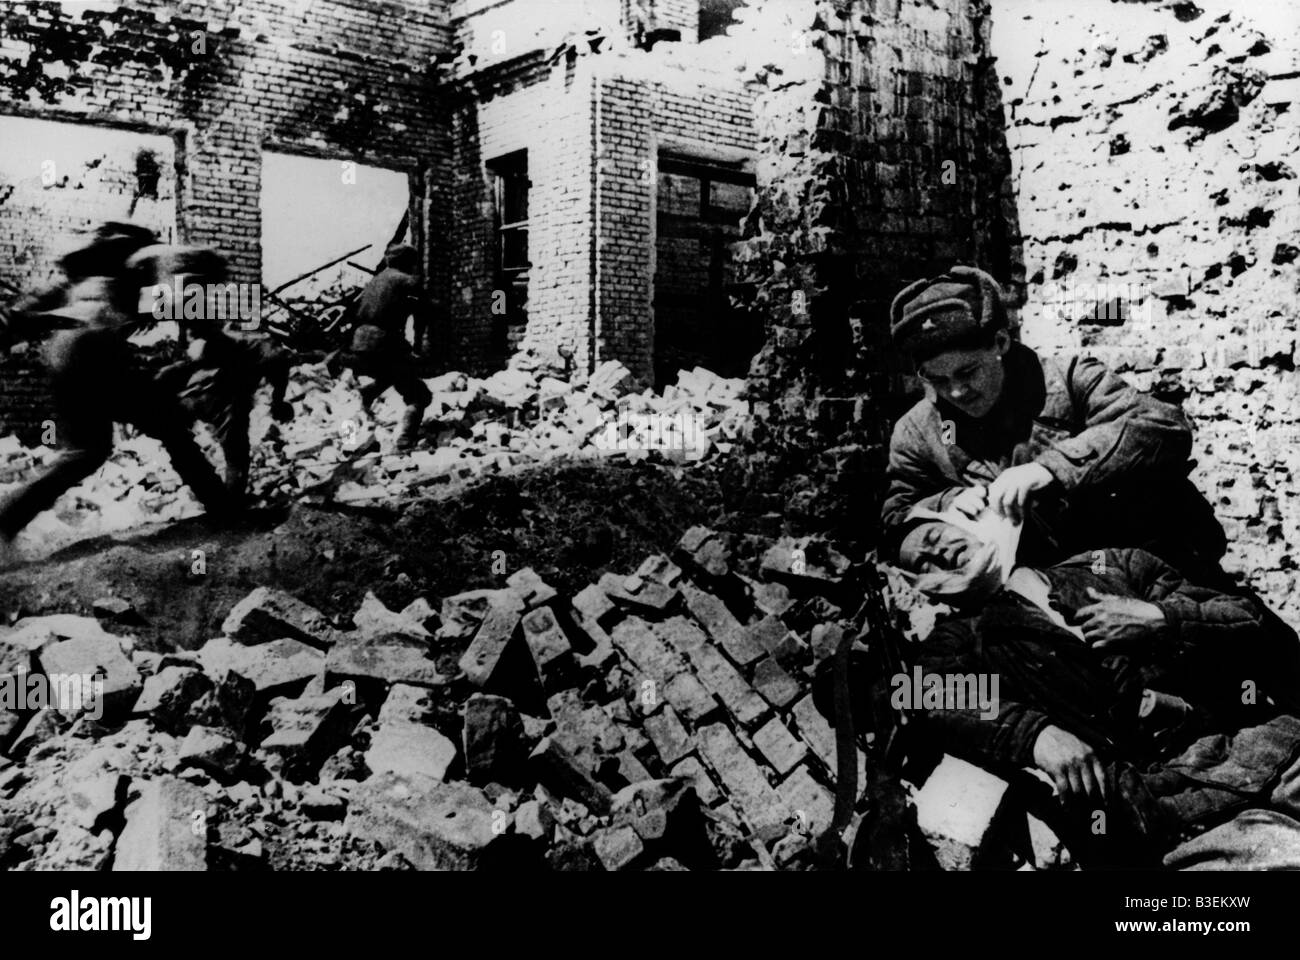 2nd World War, Stalingrad, January 1943. Stock Photo